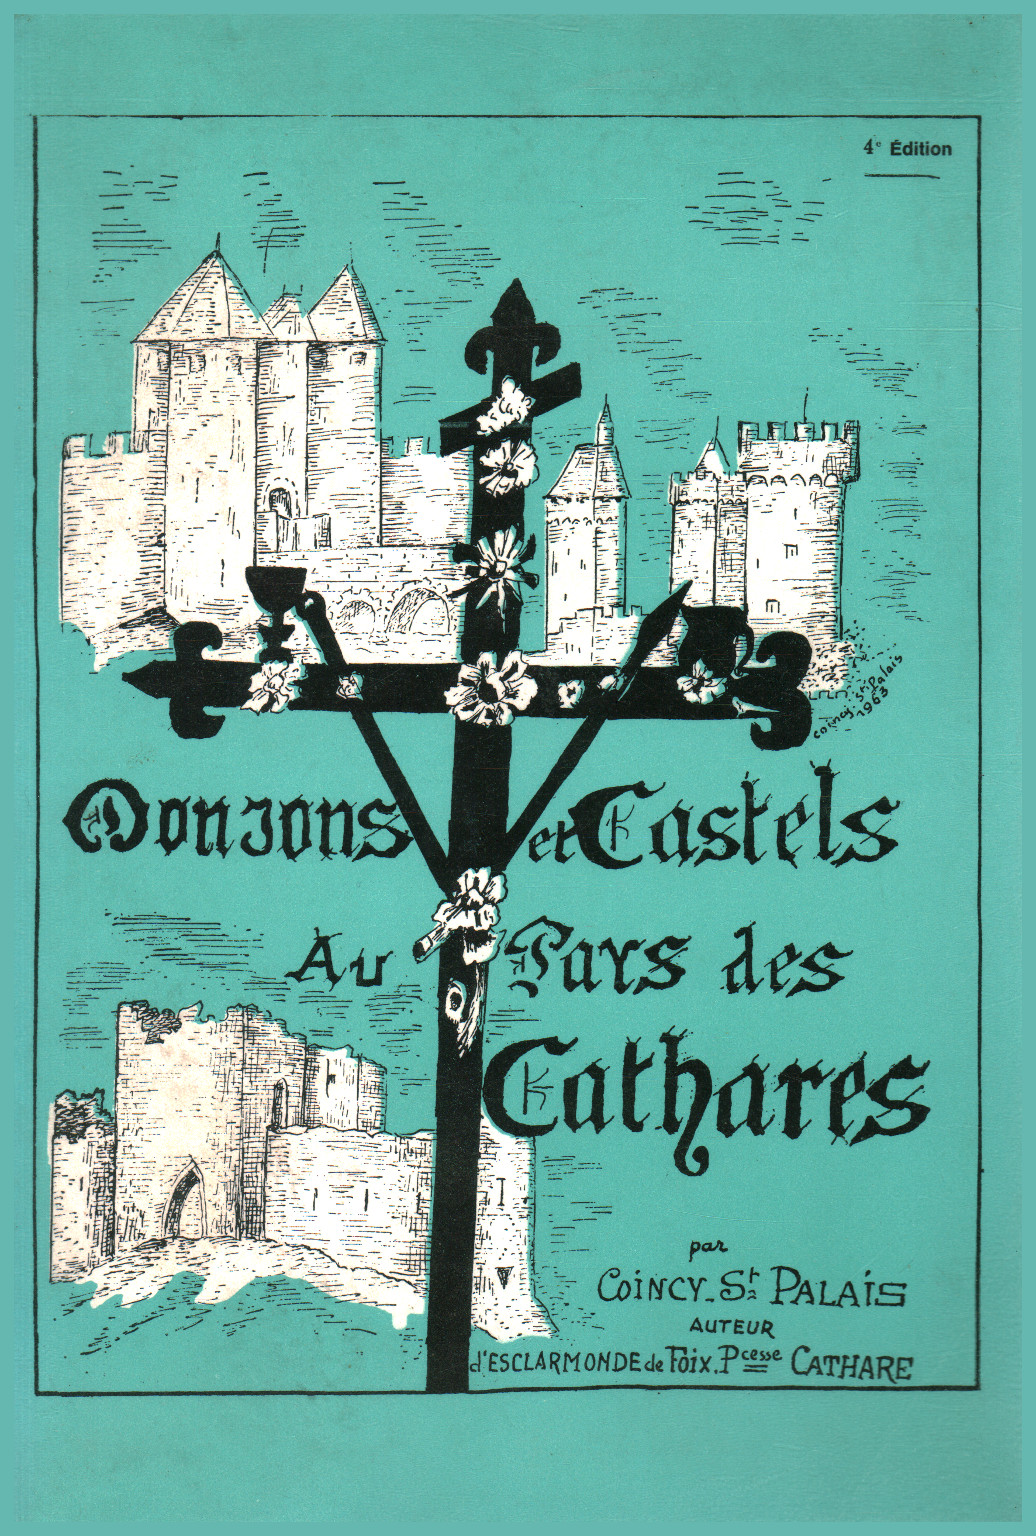 Donjons et castles au pays des cathares, s.a.